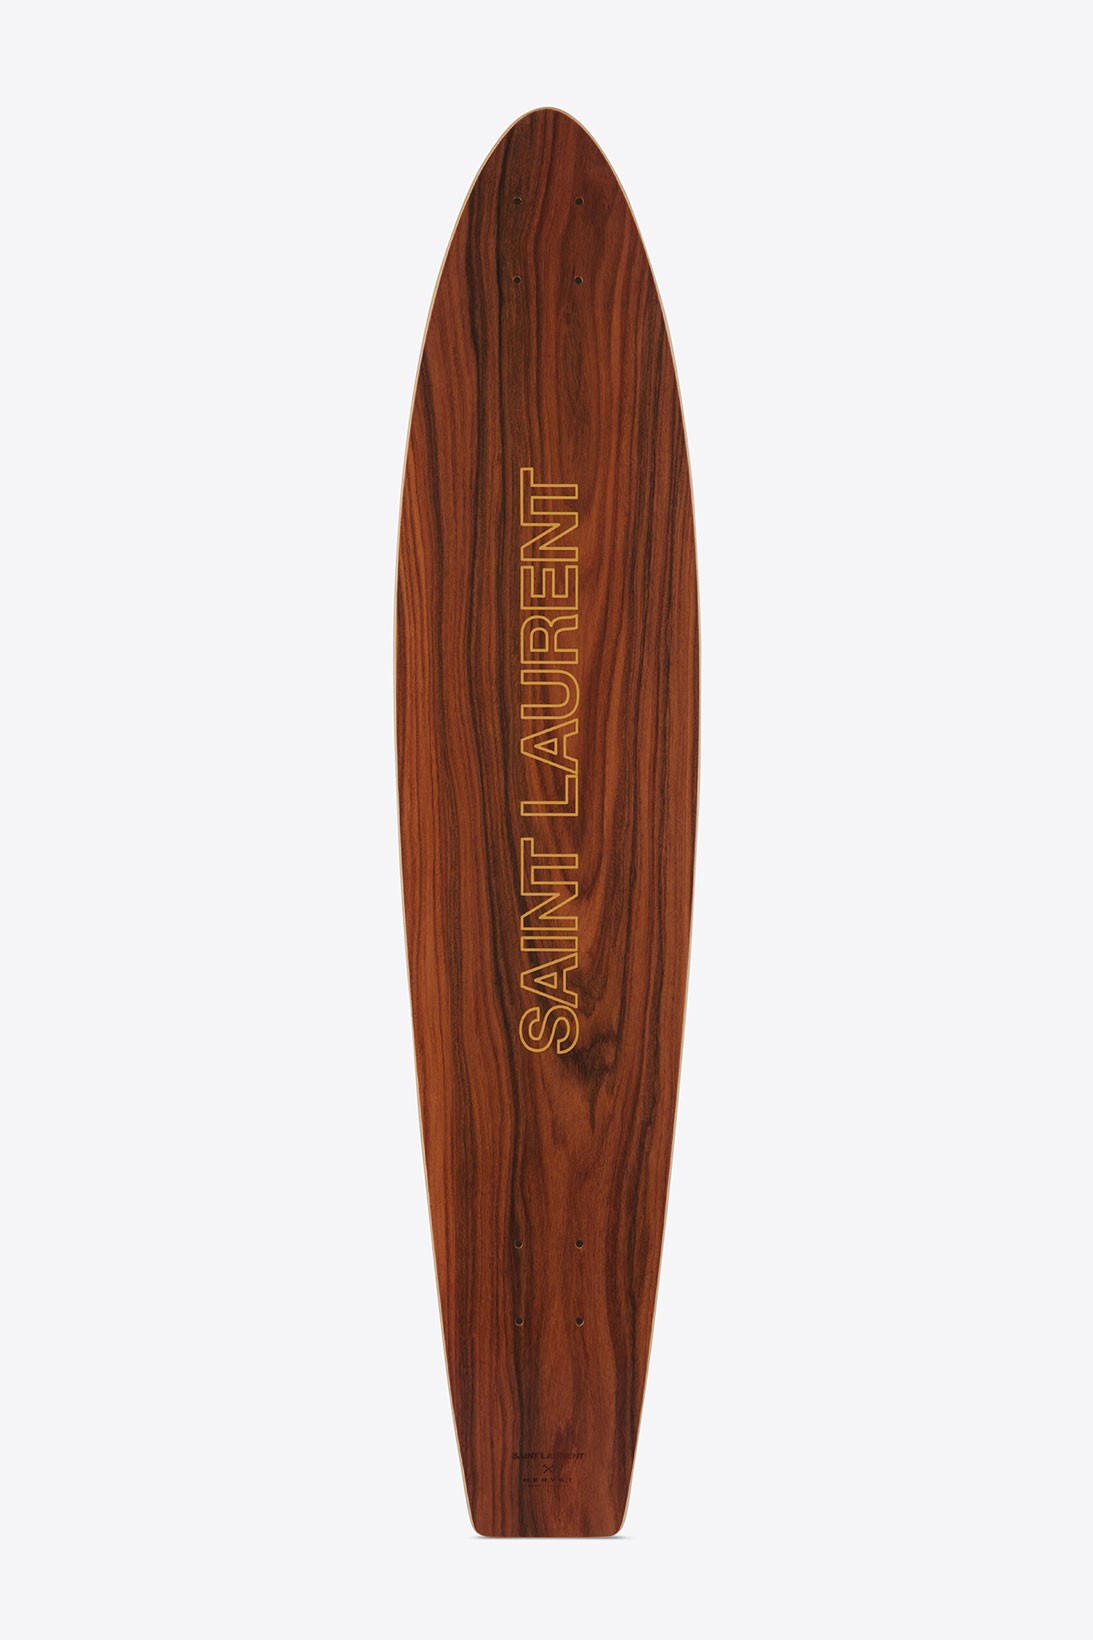 Saint Laurent представил новые модели досок для серфинга (фото 8)